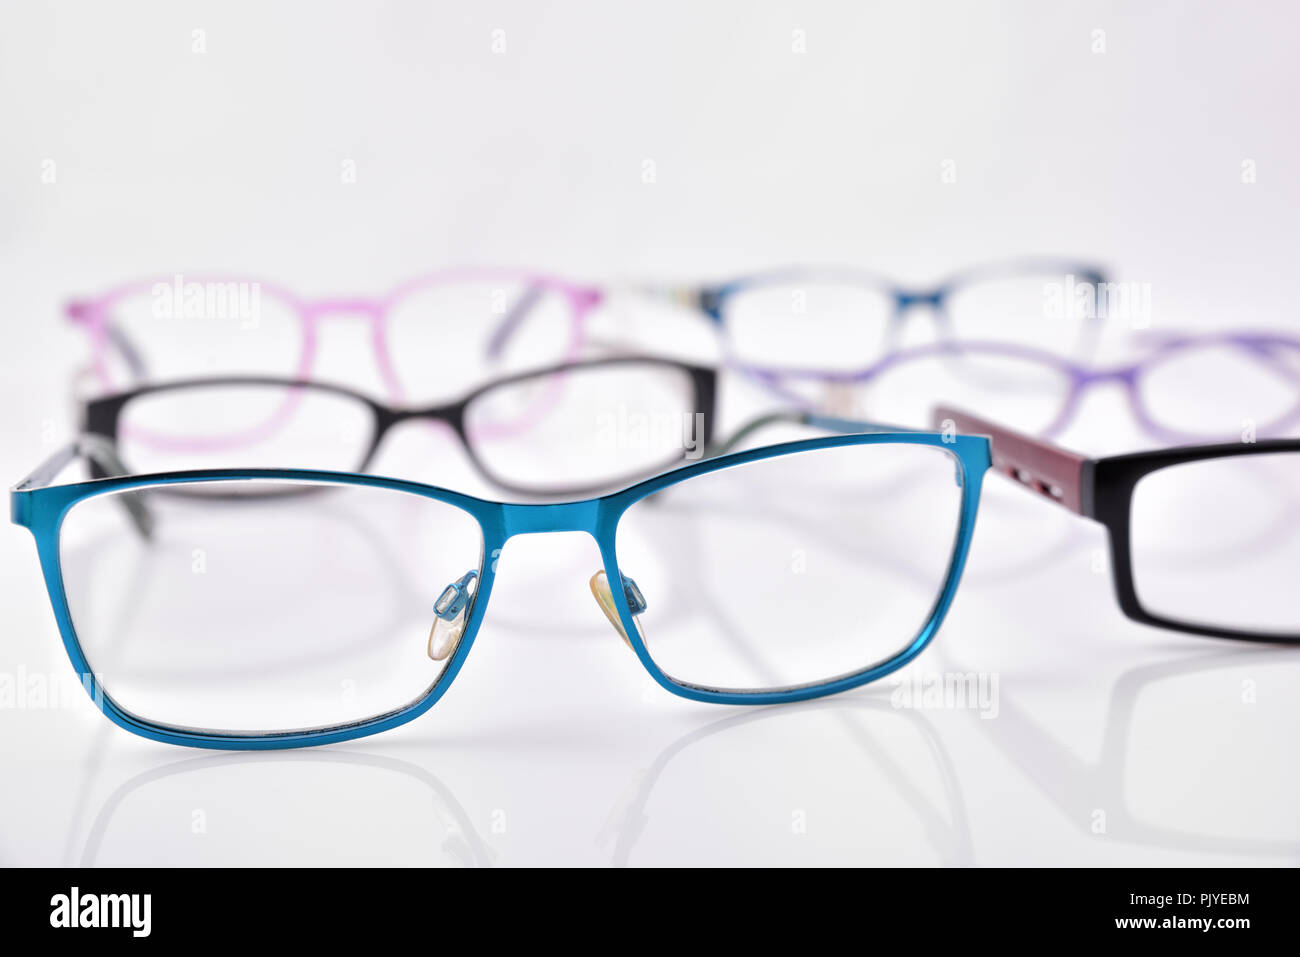 Stand de lunettes sur tableau blanc dans un magasin avec des lunettes. View avant. Composition horizontale Banque D'Images